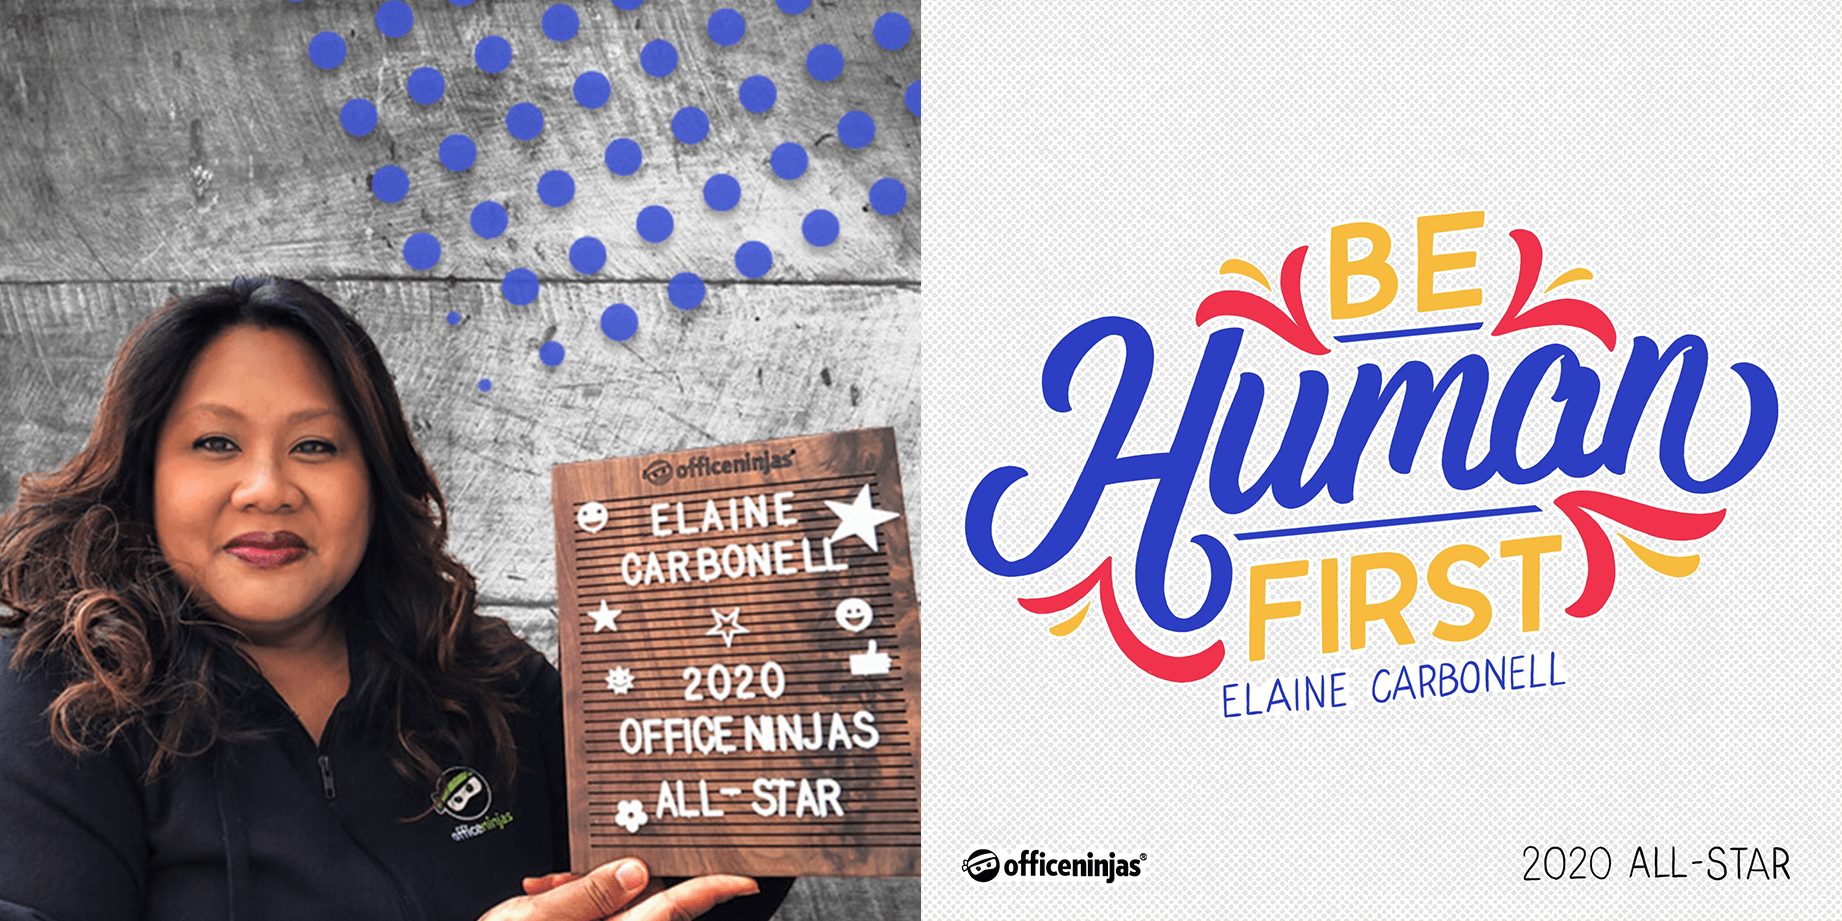 Meet 2020 OfficeNinjas All-Star Elaine Carbonell.